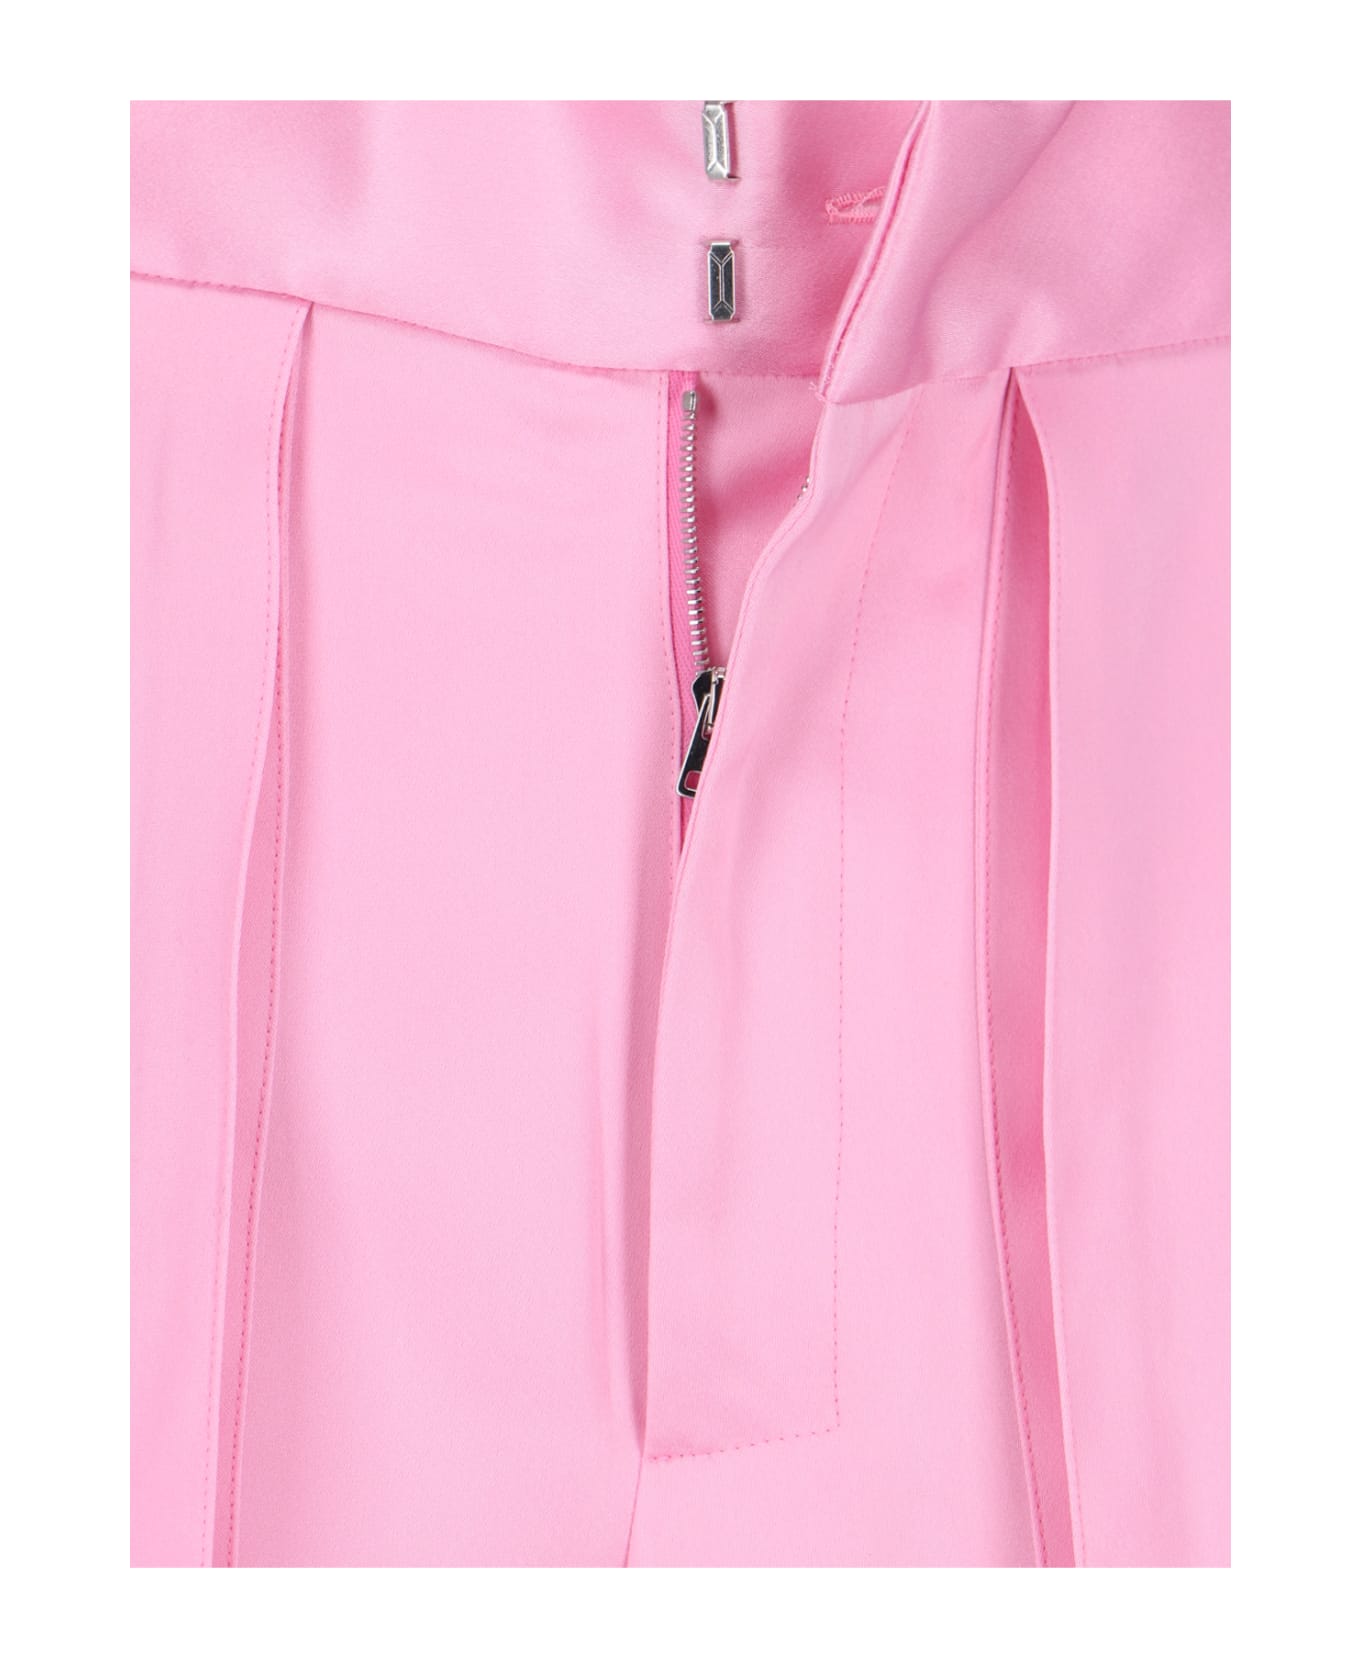 Sa Su Phi Maxi Pocket Trousers - Pink